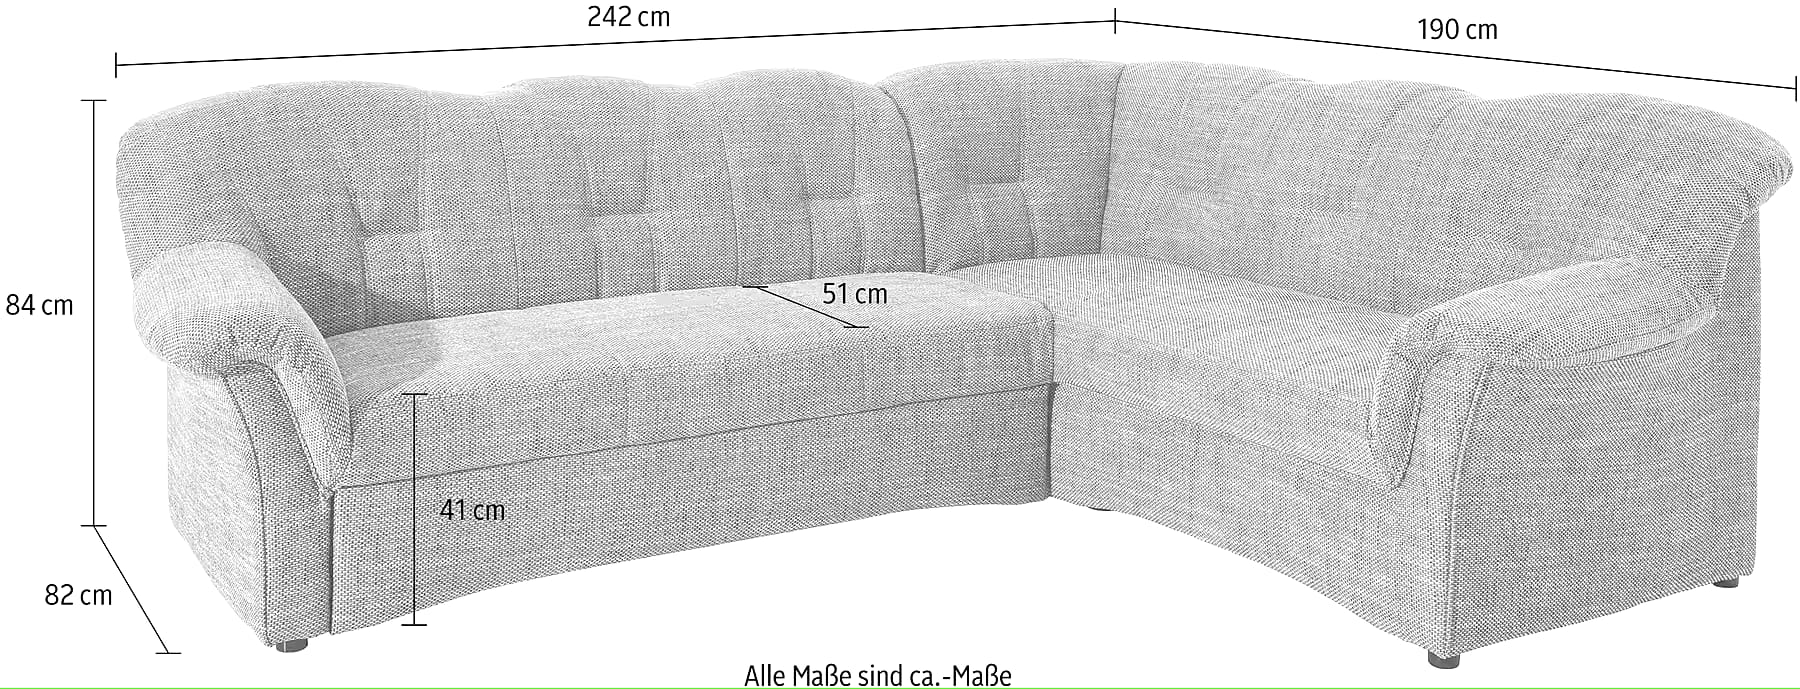 Sofa - Papenburgo N.º de artículo 6459815339